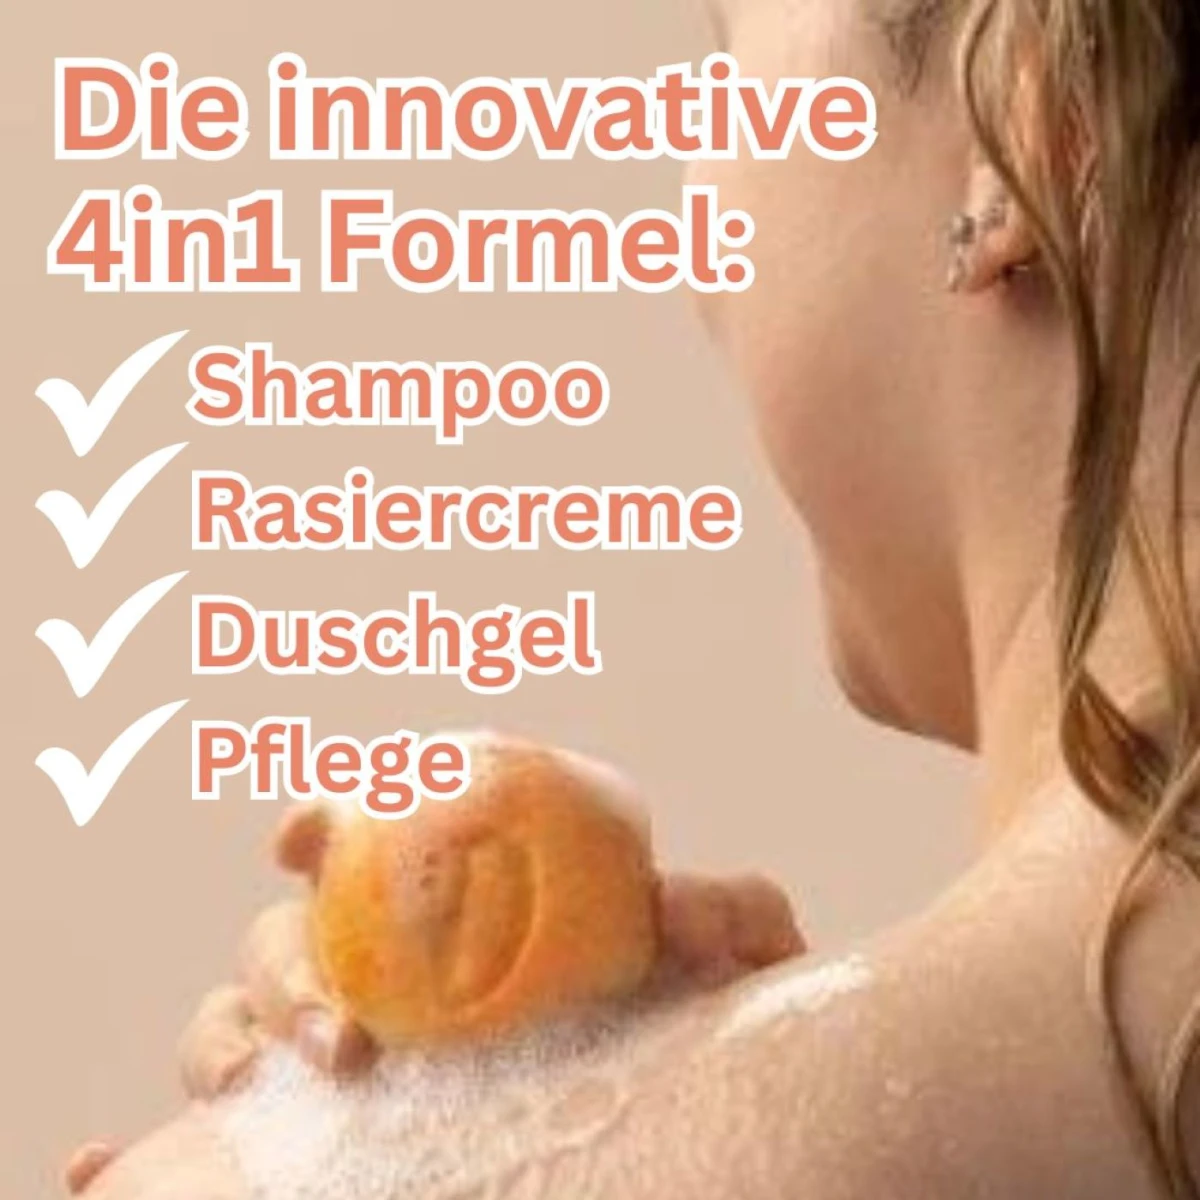 Festes Shampoo für Locken Blutorange mit Krambeöl - 4 in1 Formel